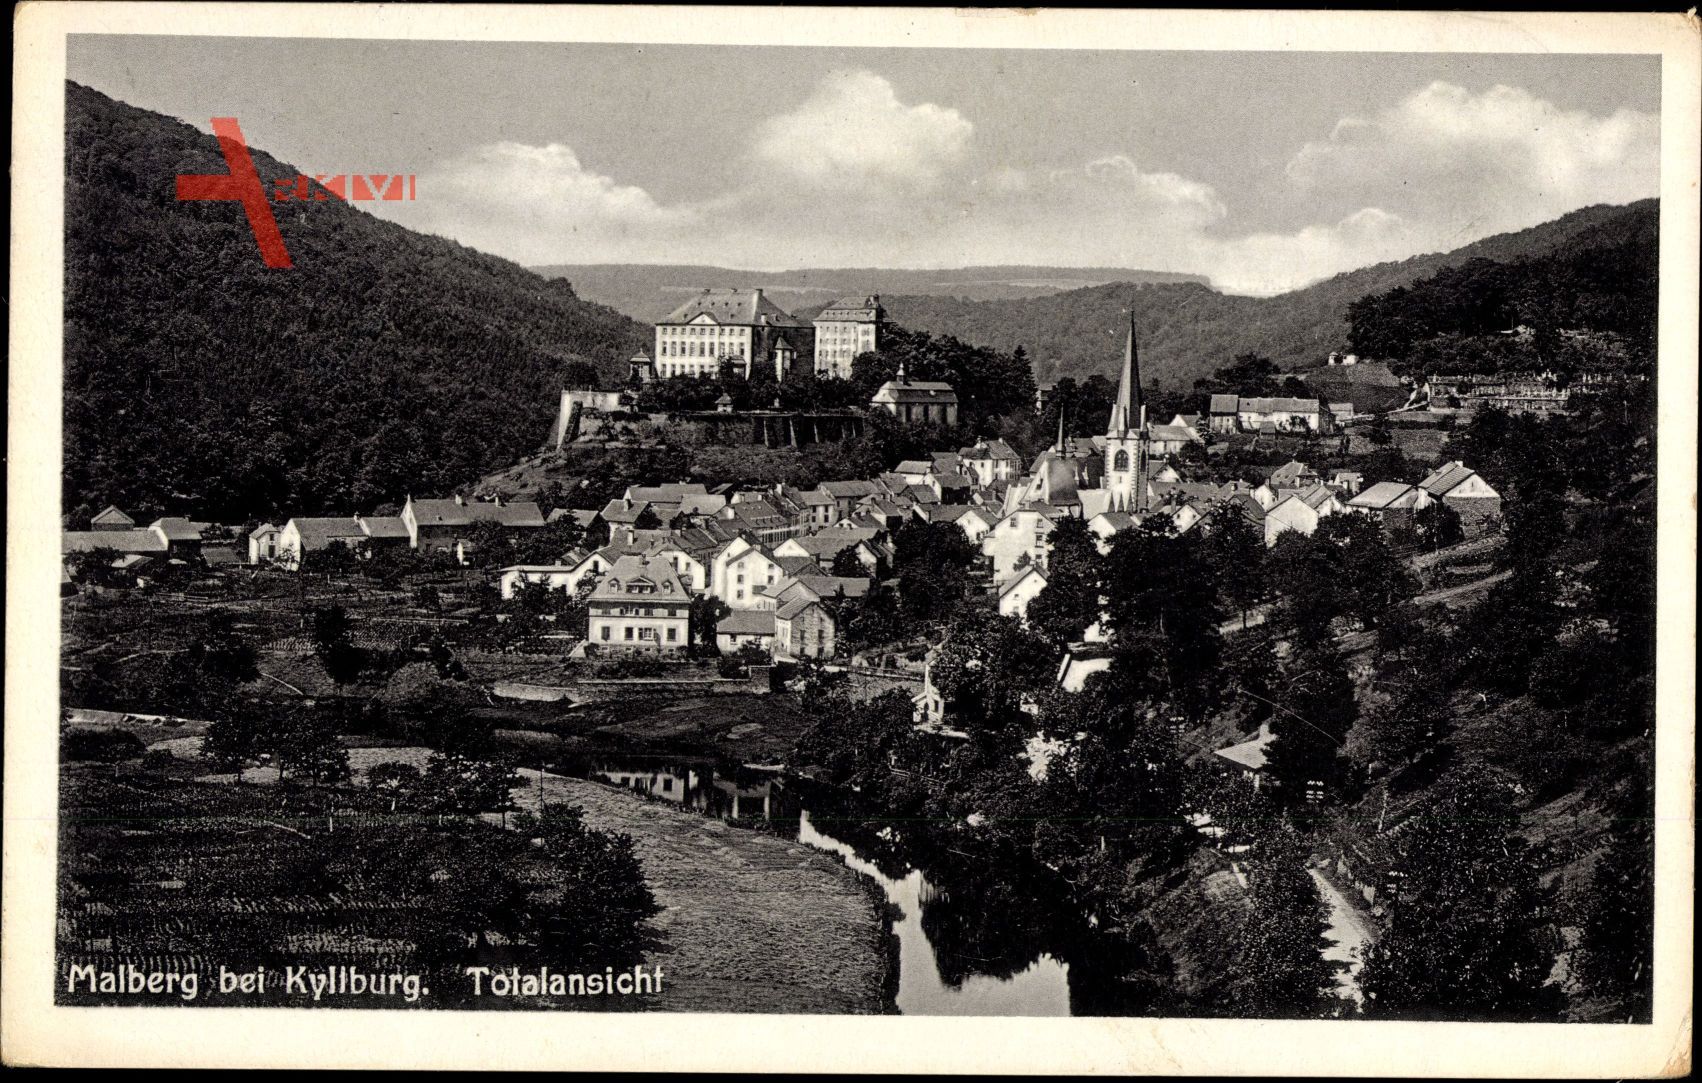 Malberg, Totalansicht der Ortschaft, Kirche, Flusspartie, Wald, Häuser